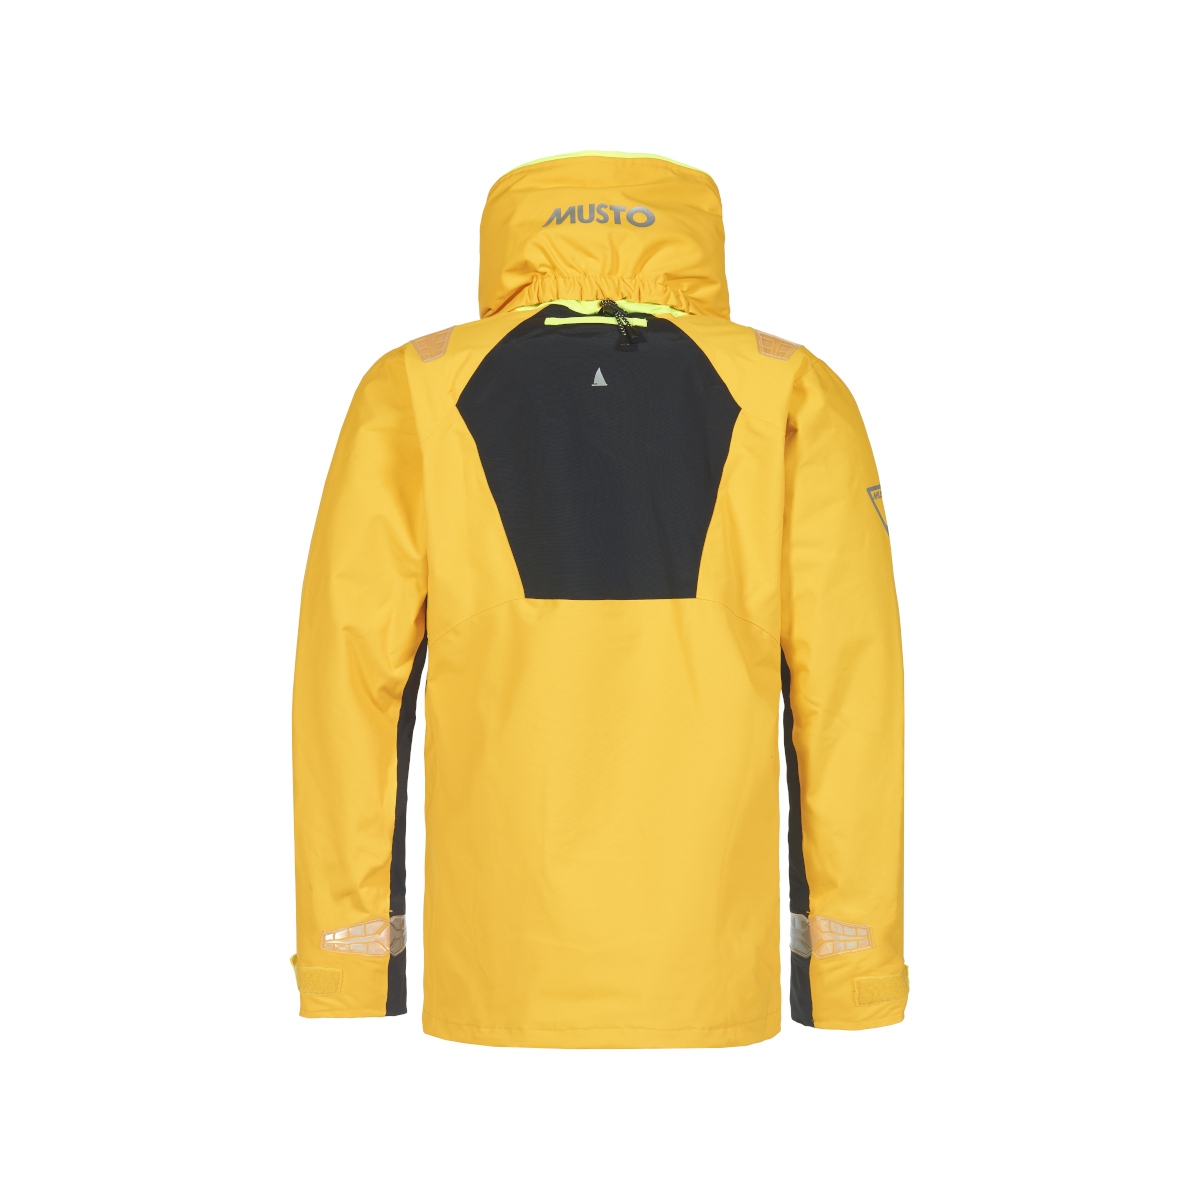 Musto BR2 veste de voile Offshore 2.0 femme jaune, taille 10